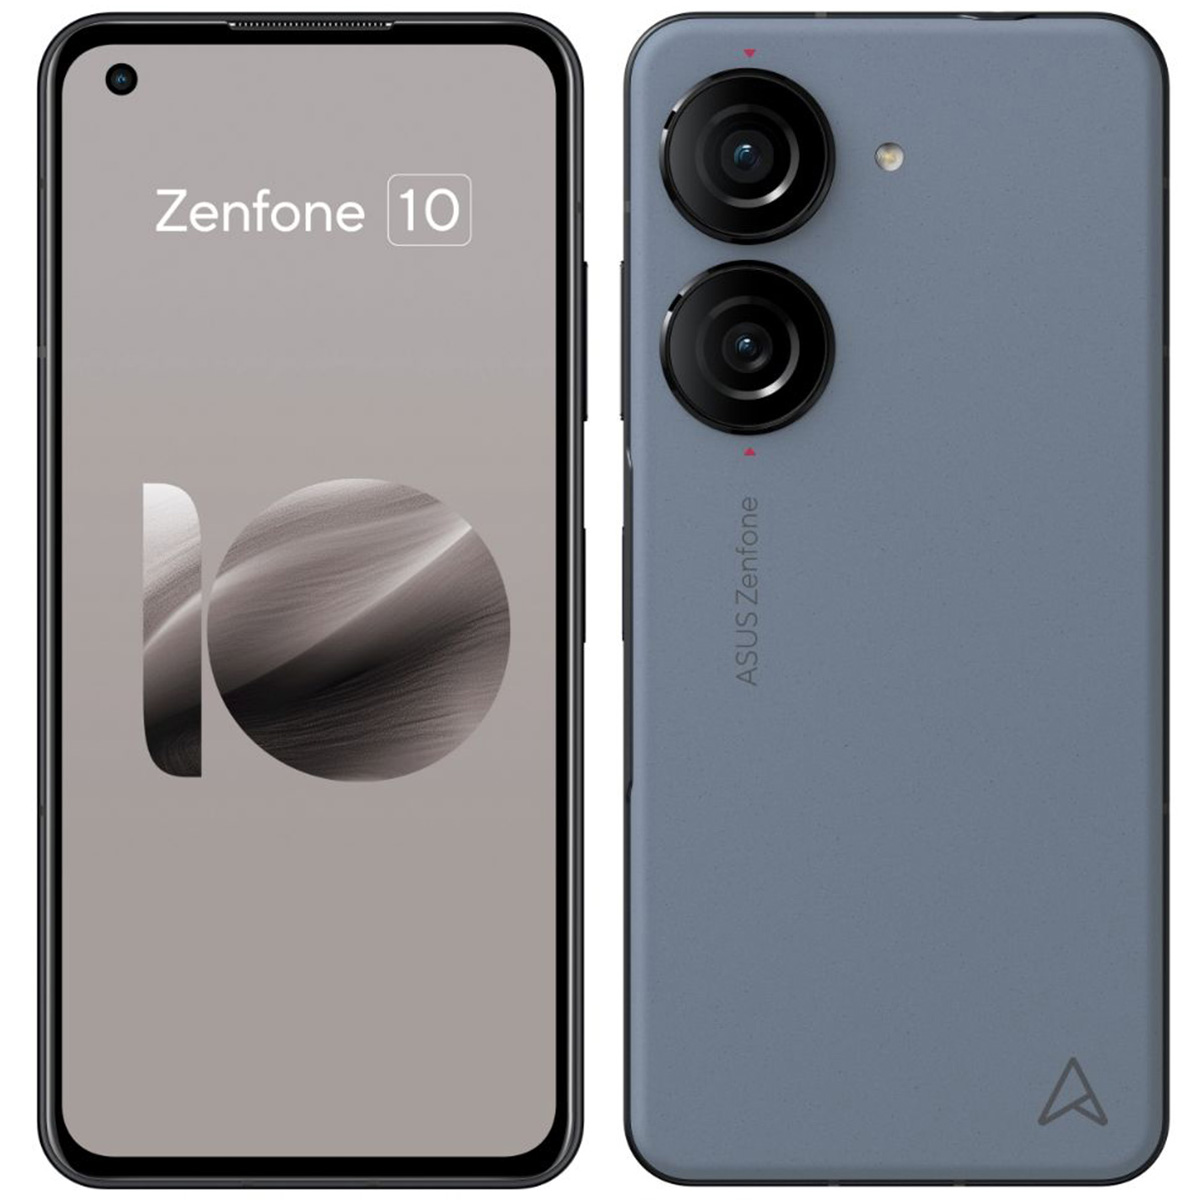 Zenfone 10/スターリーブルー/8GB/256GB